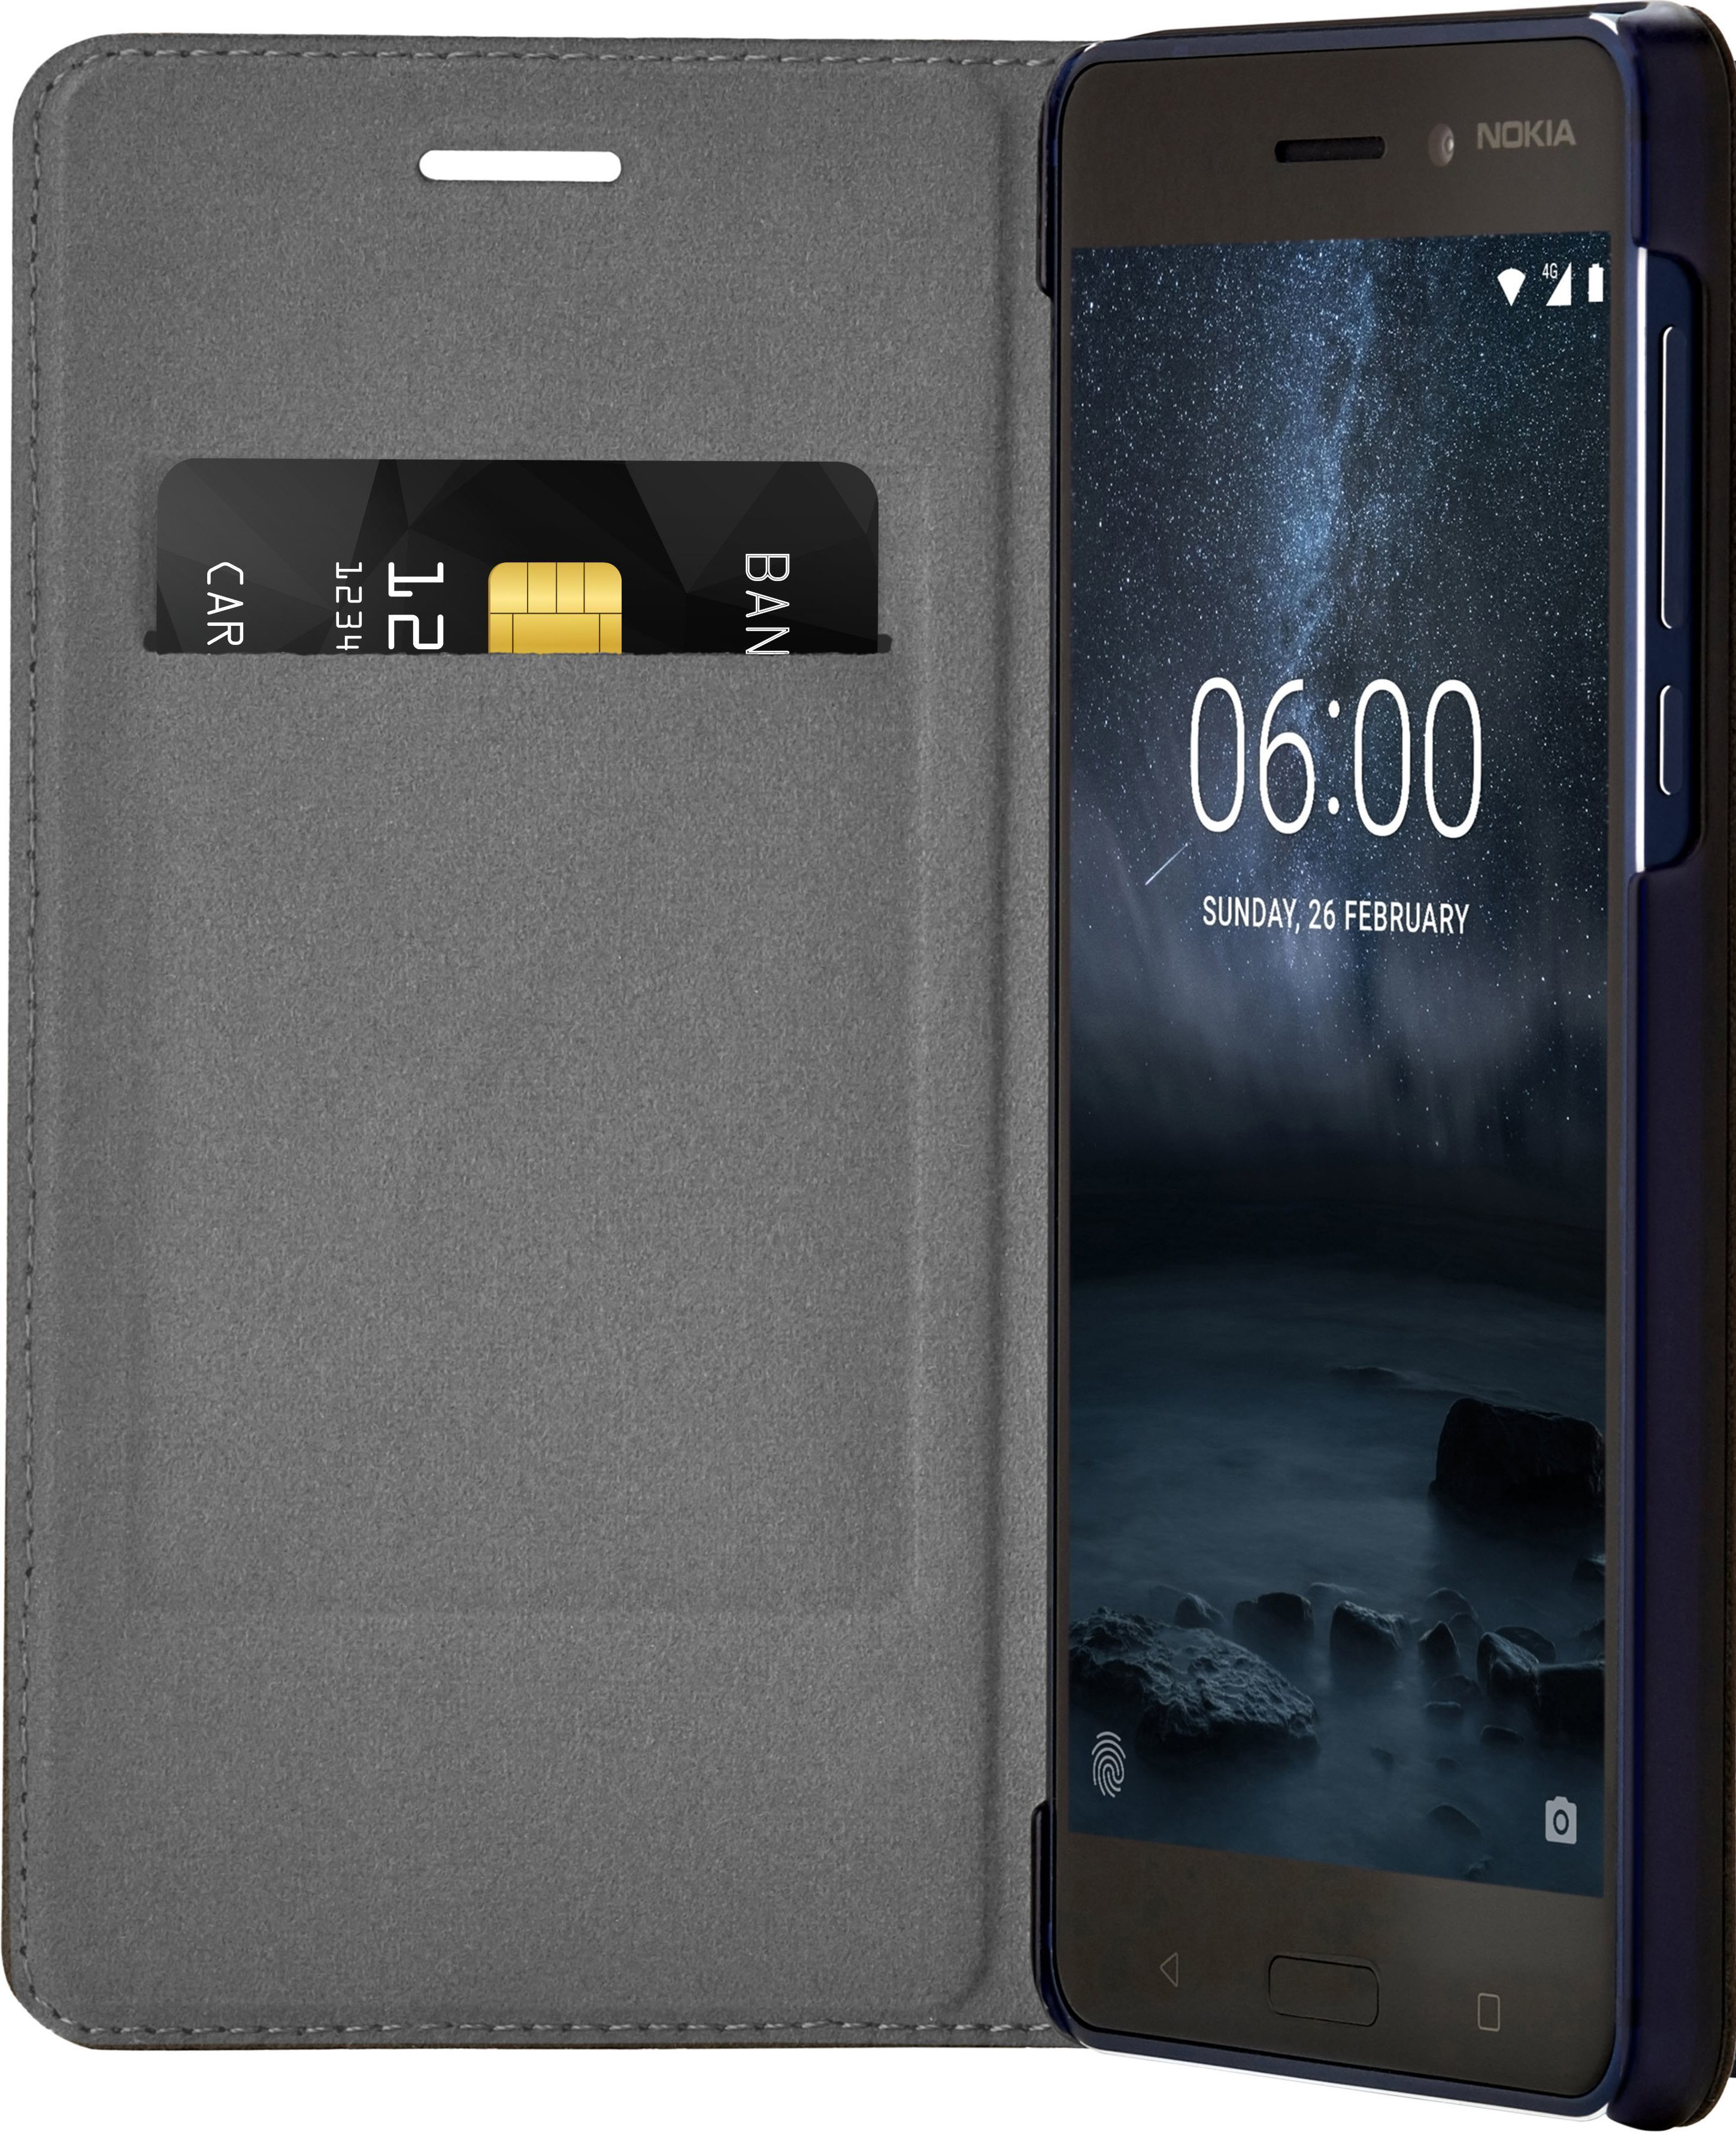 Flip Blau NOKIA 6, Backcover, Case CP-301, Nokia, Slim